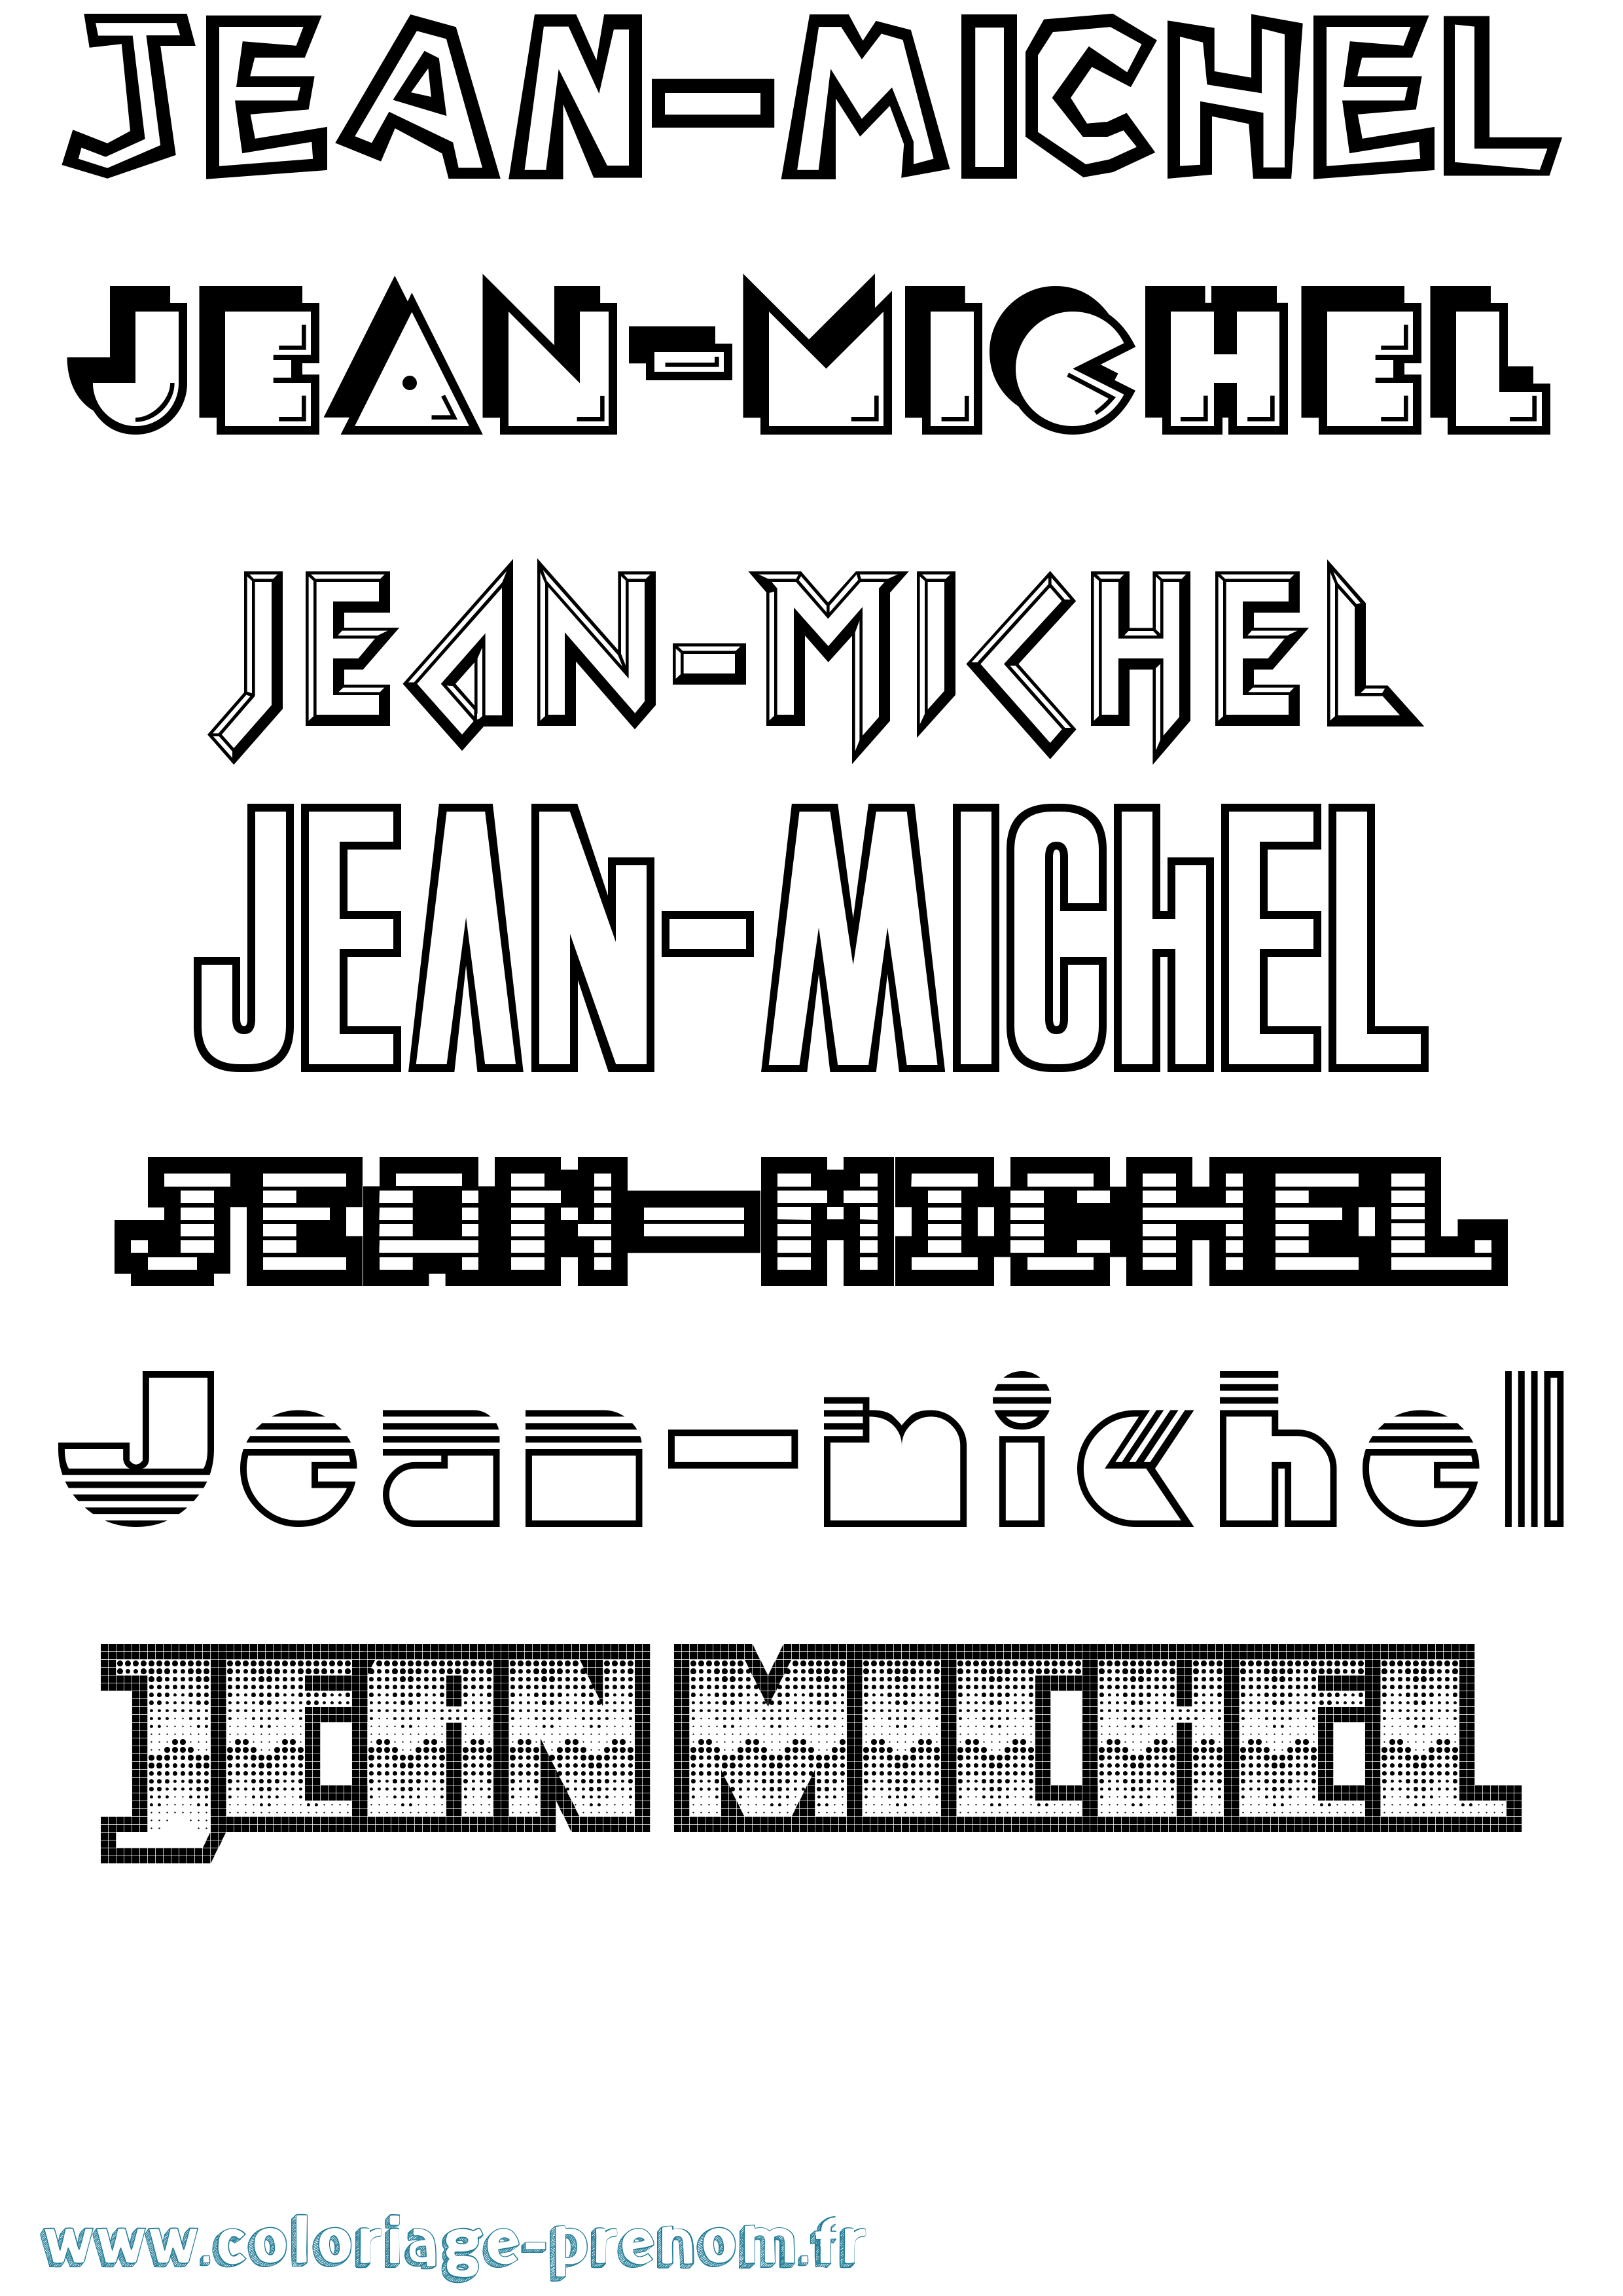 Coloriage prénom Jean-Michel Jeux Vidéos